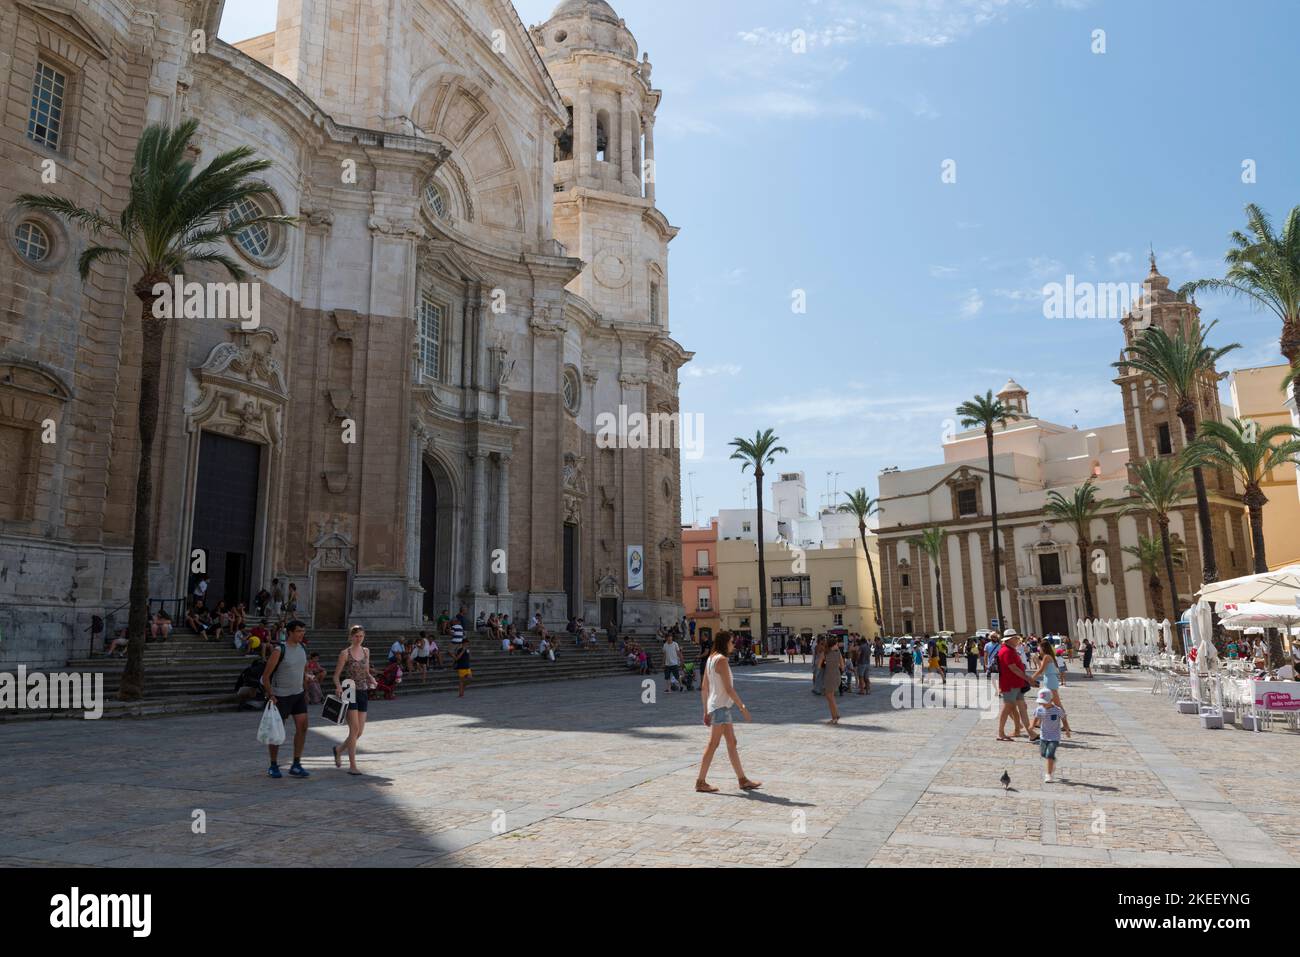 Touristes marchant sur la Plaza de la Catedral en face de la Catedral de Cadix. Cadix, province d'Andalousie, Espagne. Banque D'Images